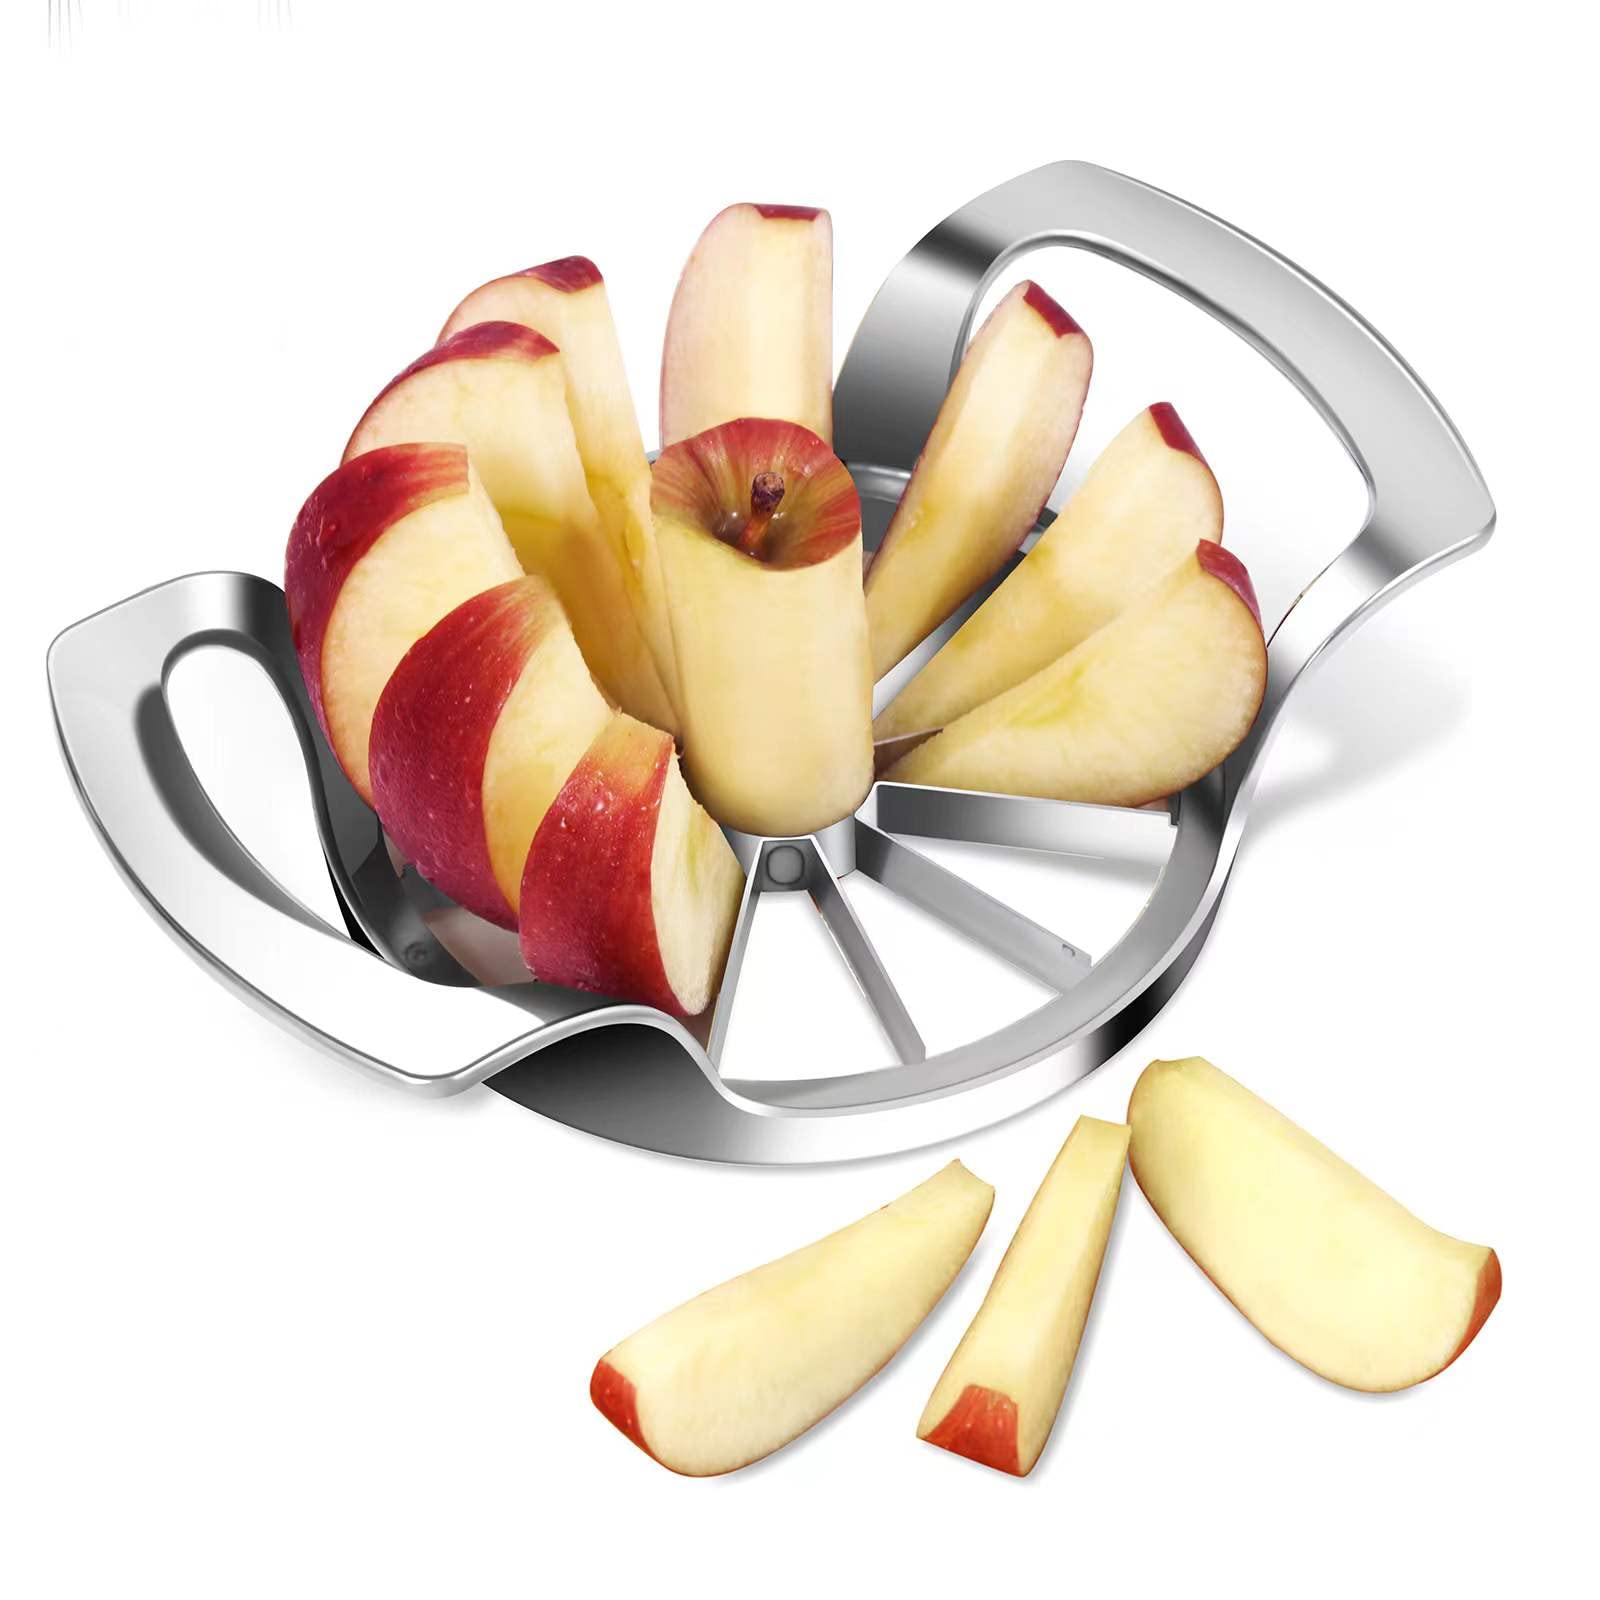 Apple Corer and Slicer